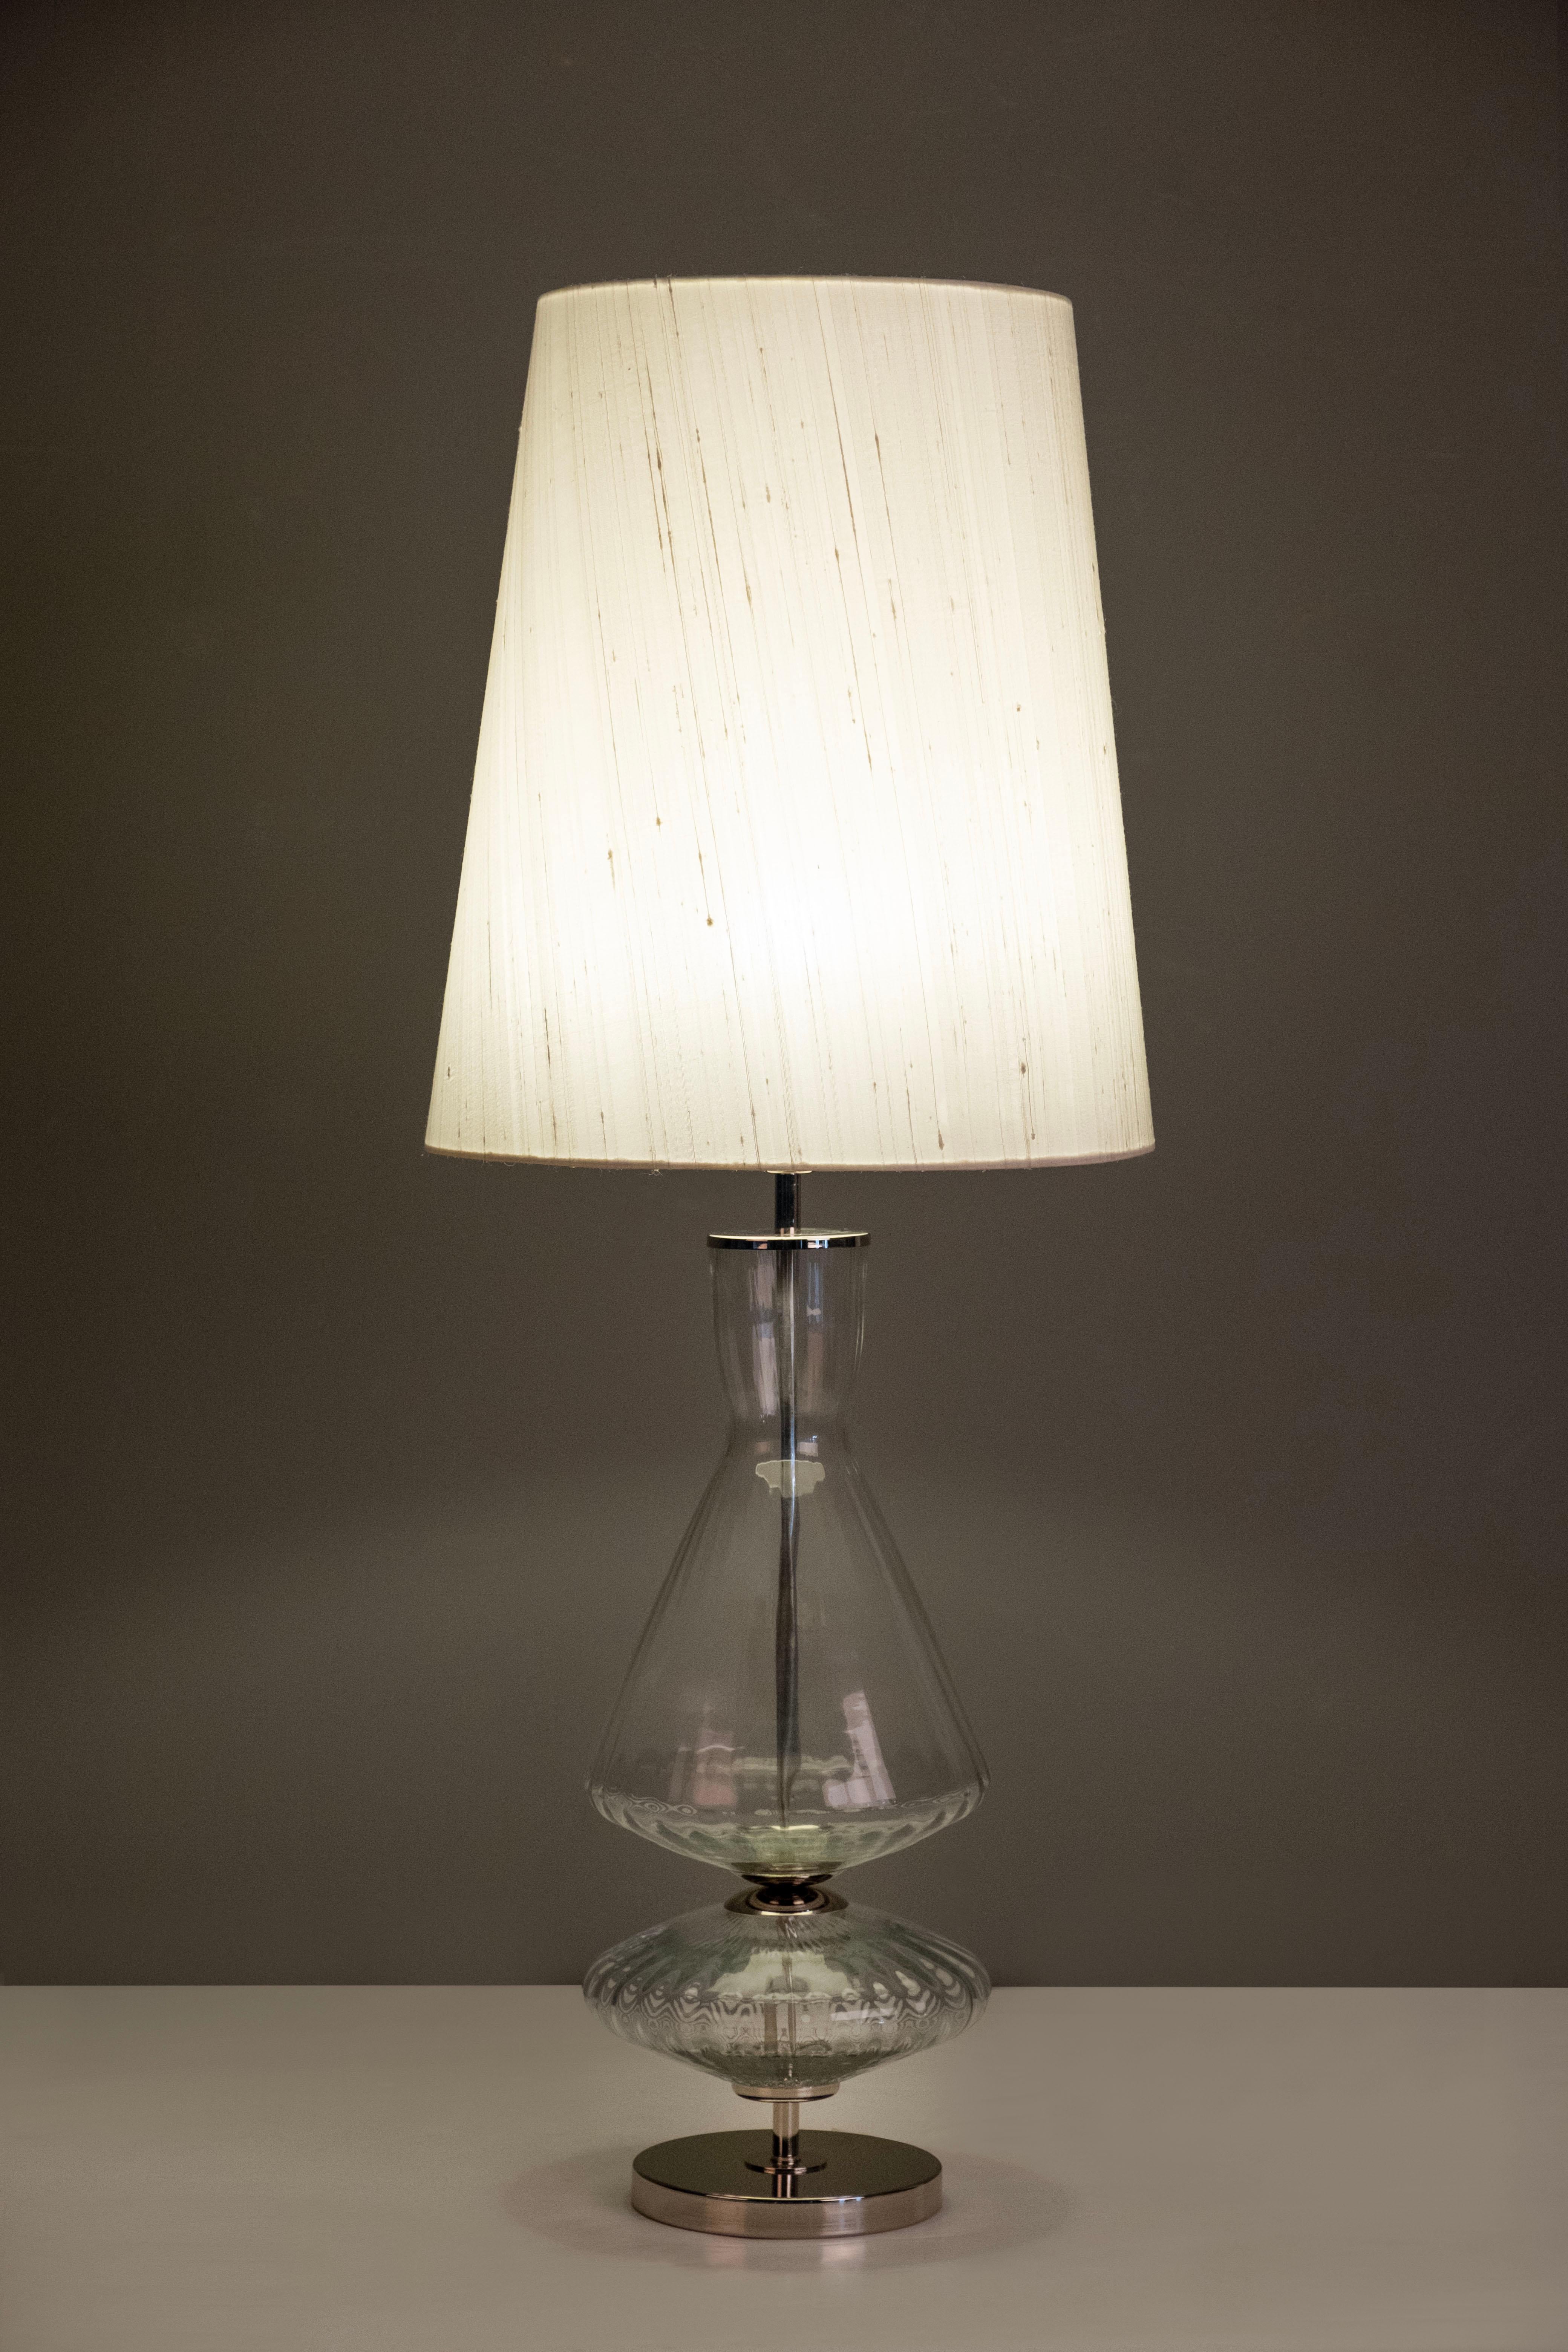 Lot de 2 lampes de table Assis, Collection S, fabriquées à la main au Portugal - Europe par GF Modern.

Assis est une lampe de table élégante et un complément attrayant pour une maison moderne. Le verre transparent et l'acier inoxydable poli se